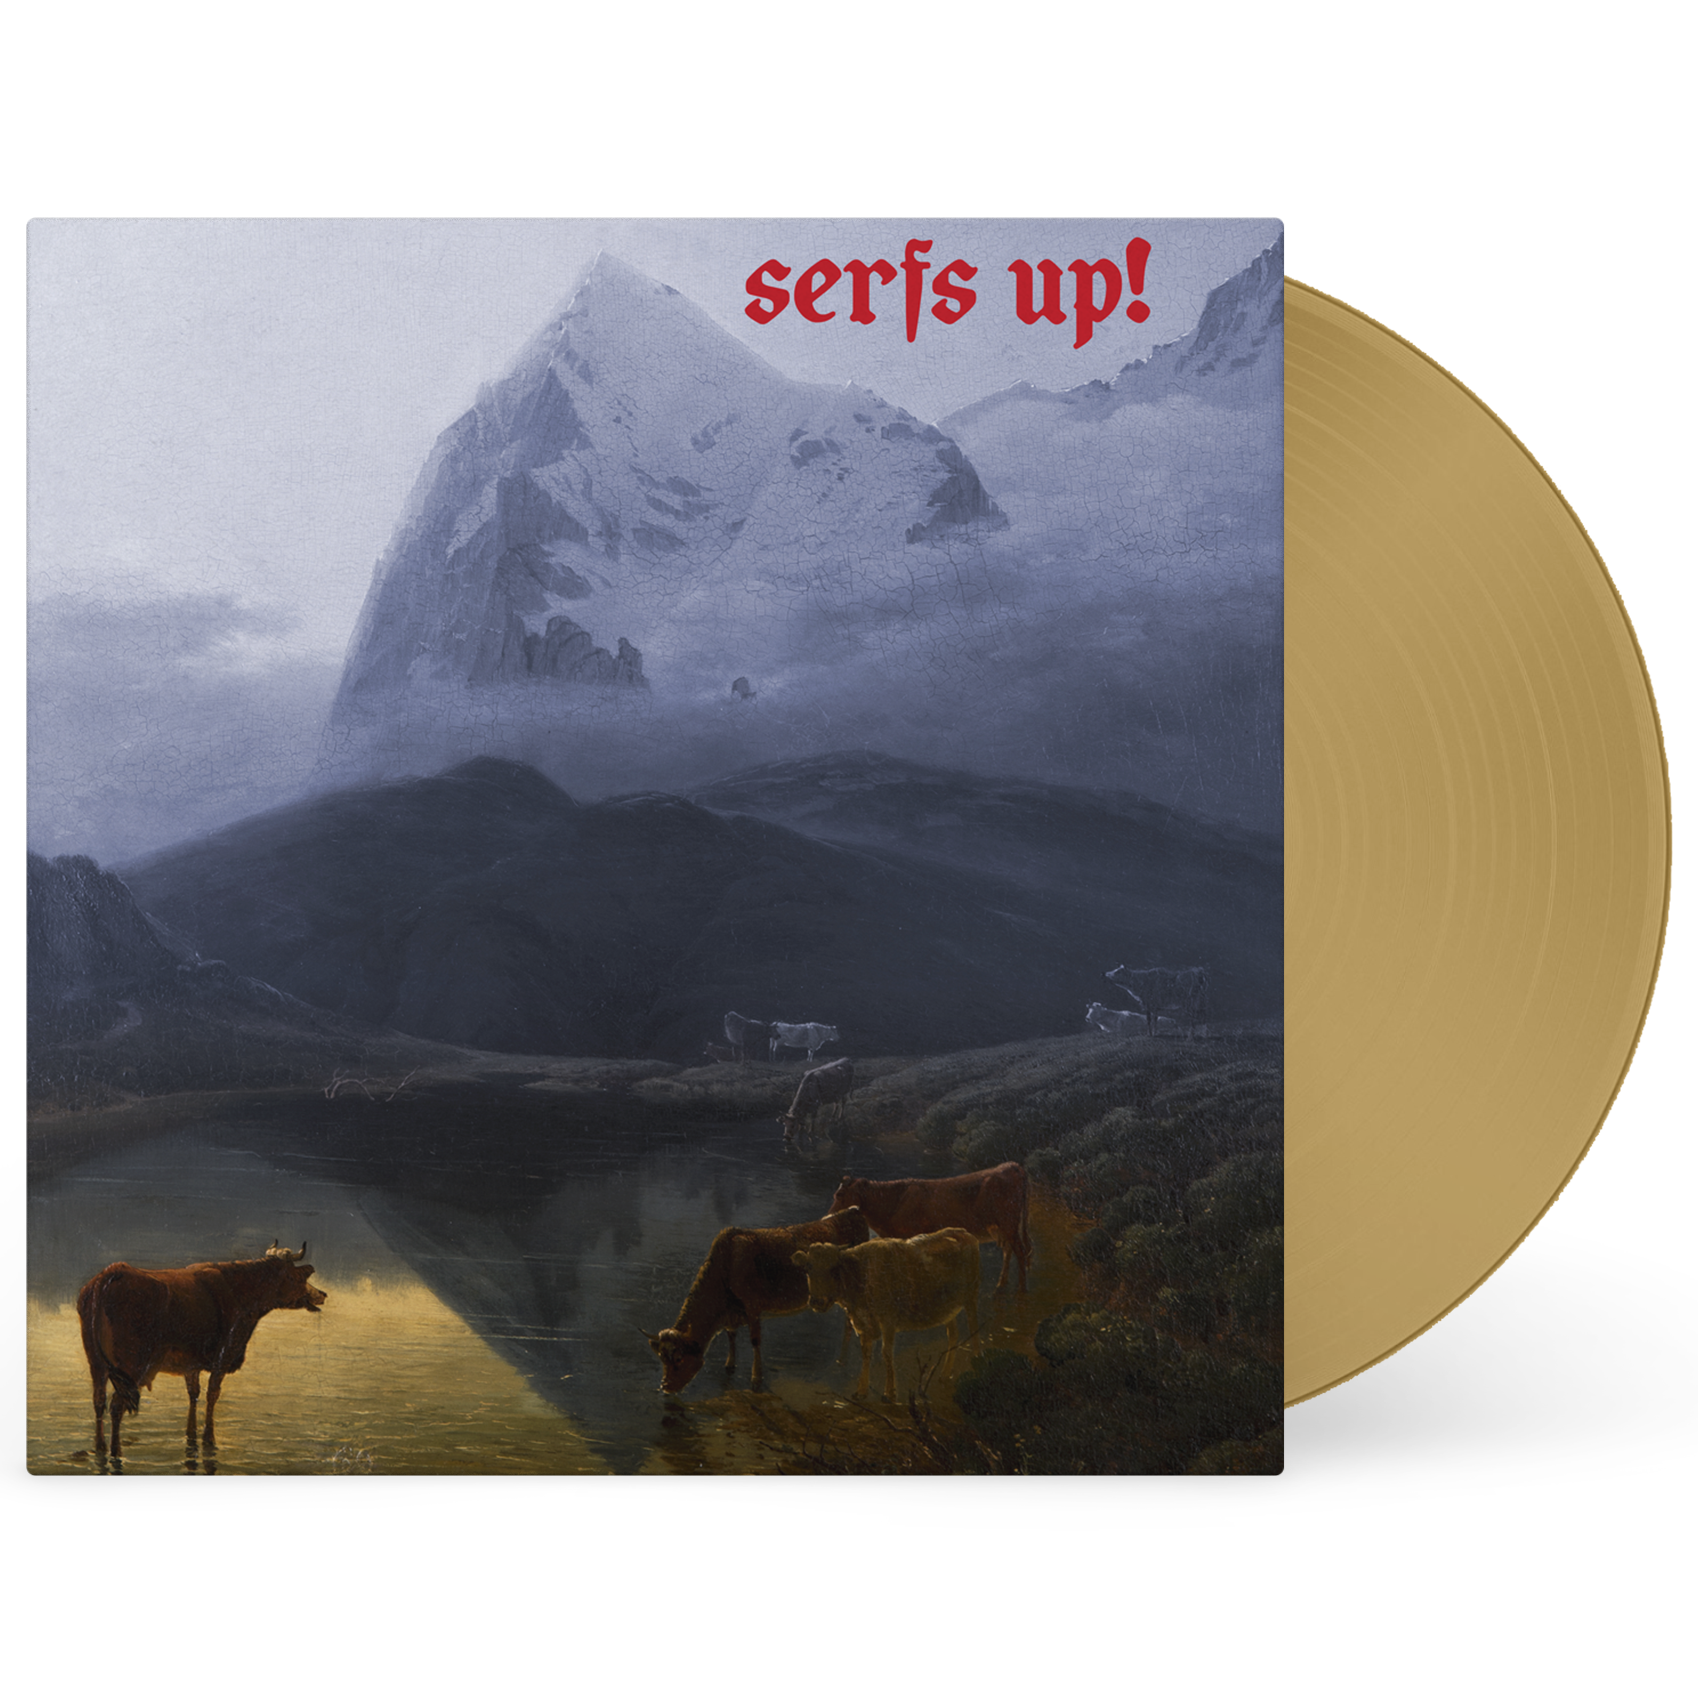 Album artwork for Serfs Up! by Fat White Family